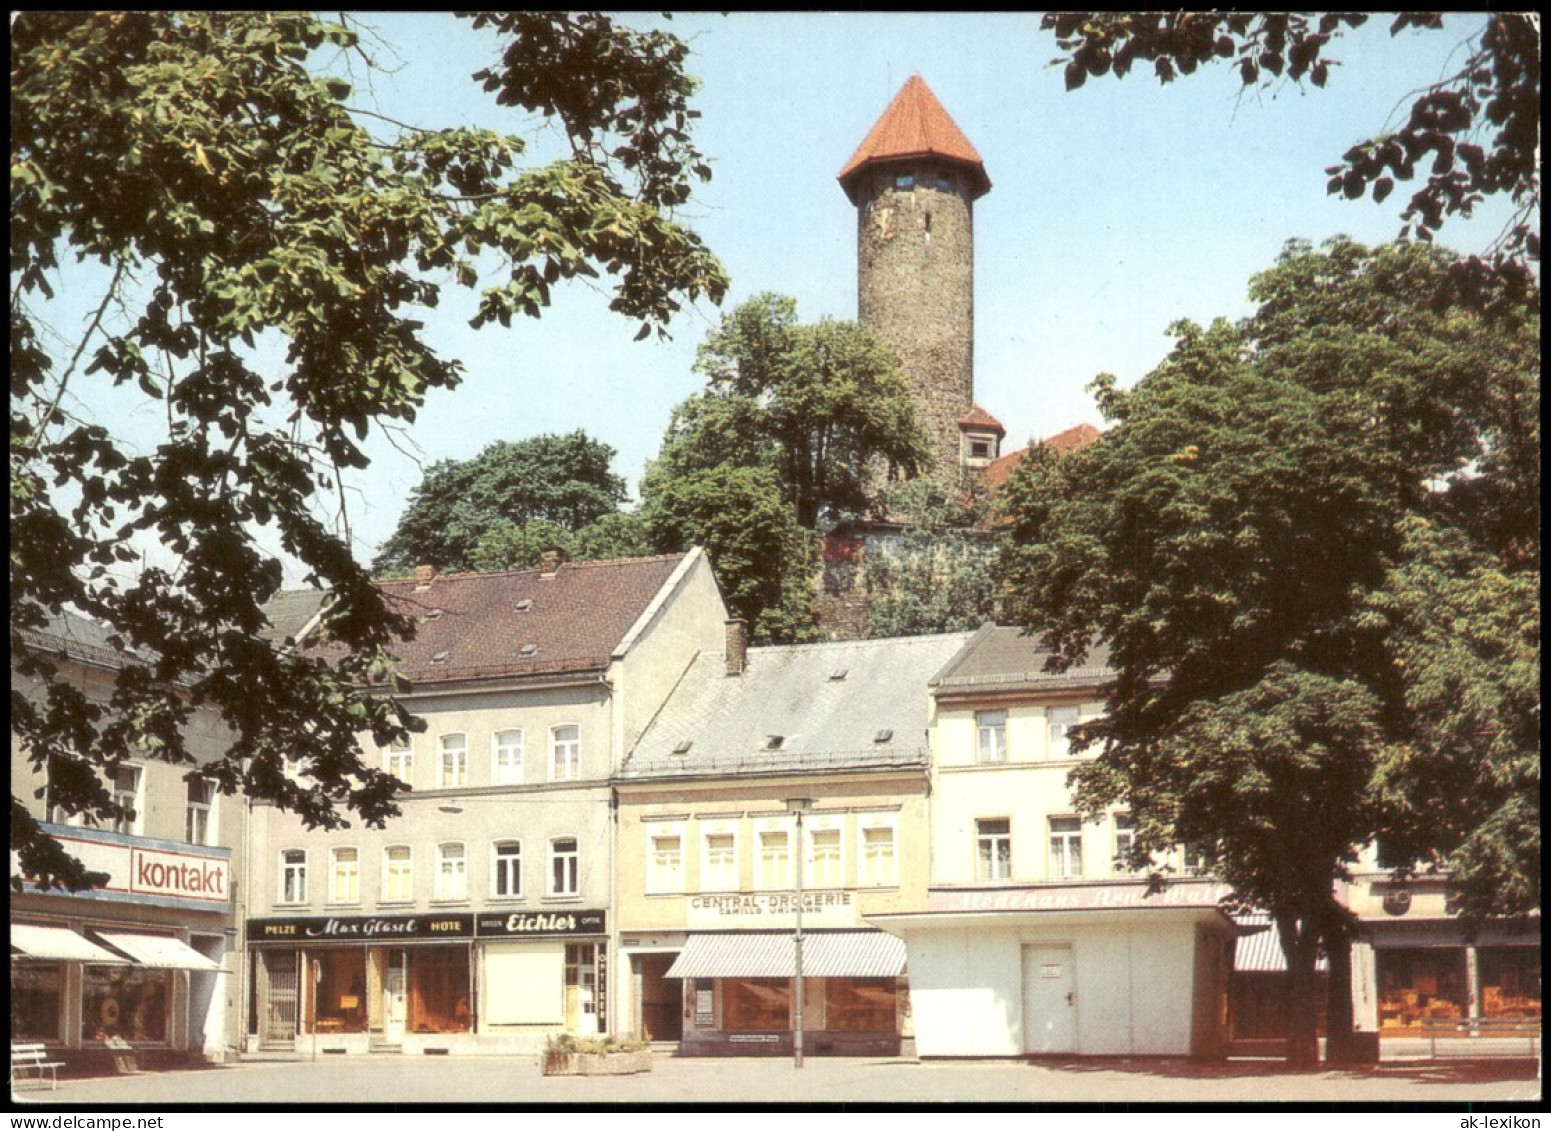 Ansichtskarte Auerbach (Vogtland) Blick Vom Friedensplatz Zum Schlossturm 1983 - Auerbach (Vogtland)